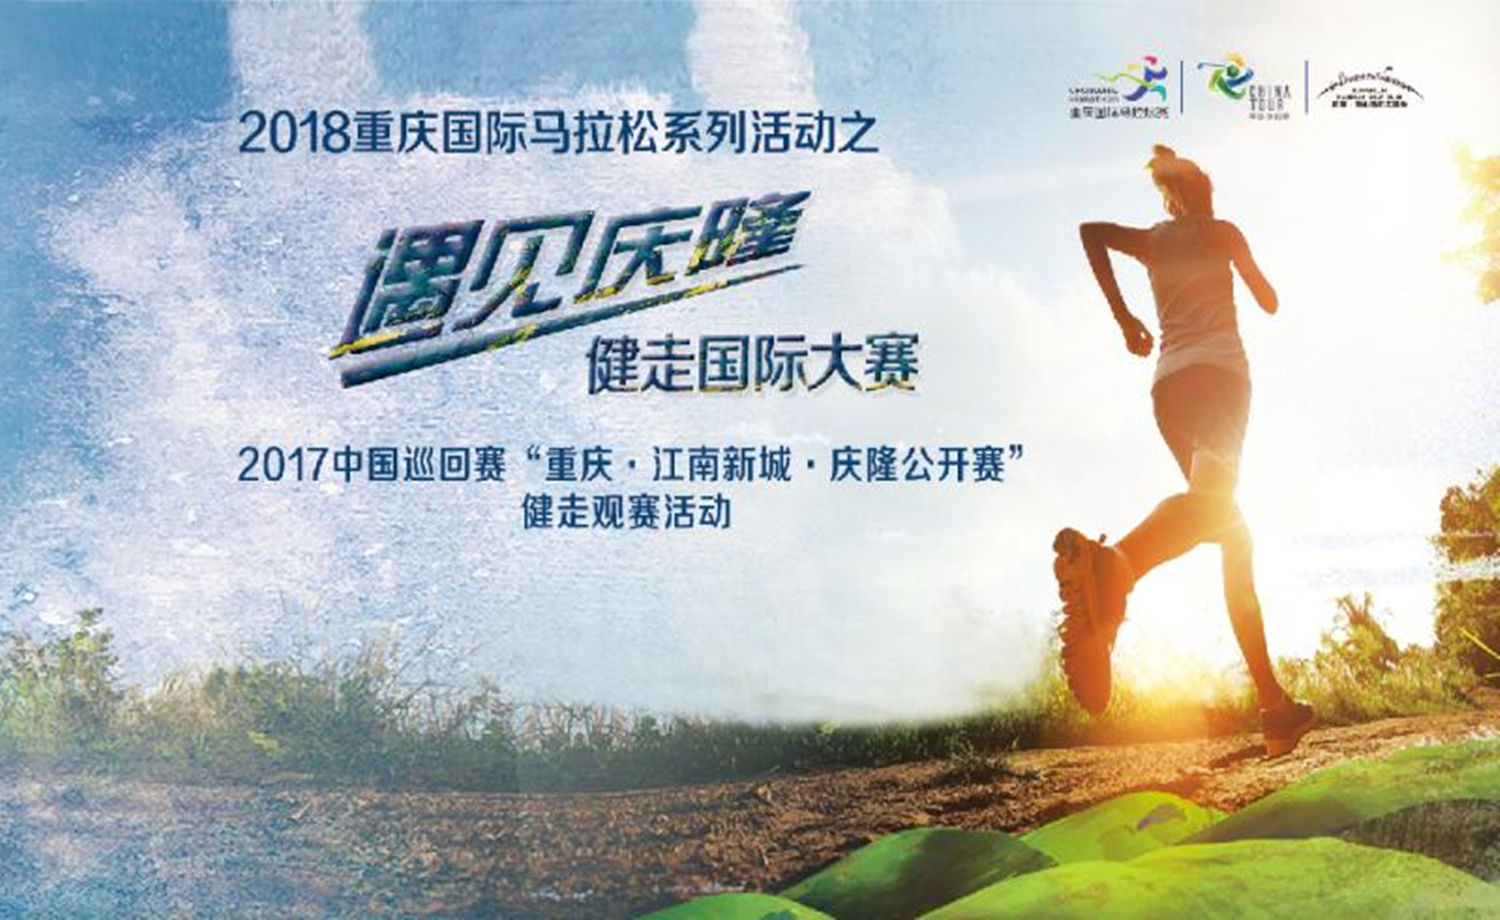 2018重庆国际马拉松系列活动之 遇见庆隆 健走国际大赛